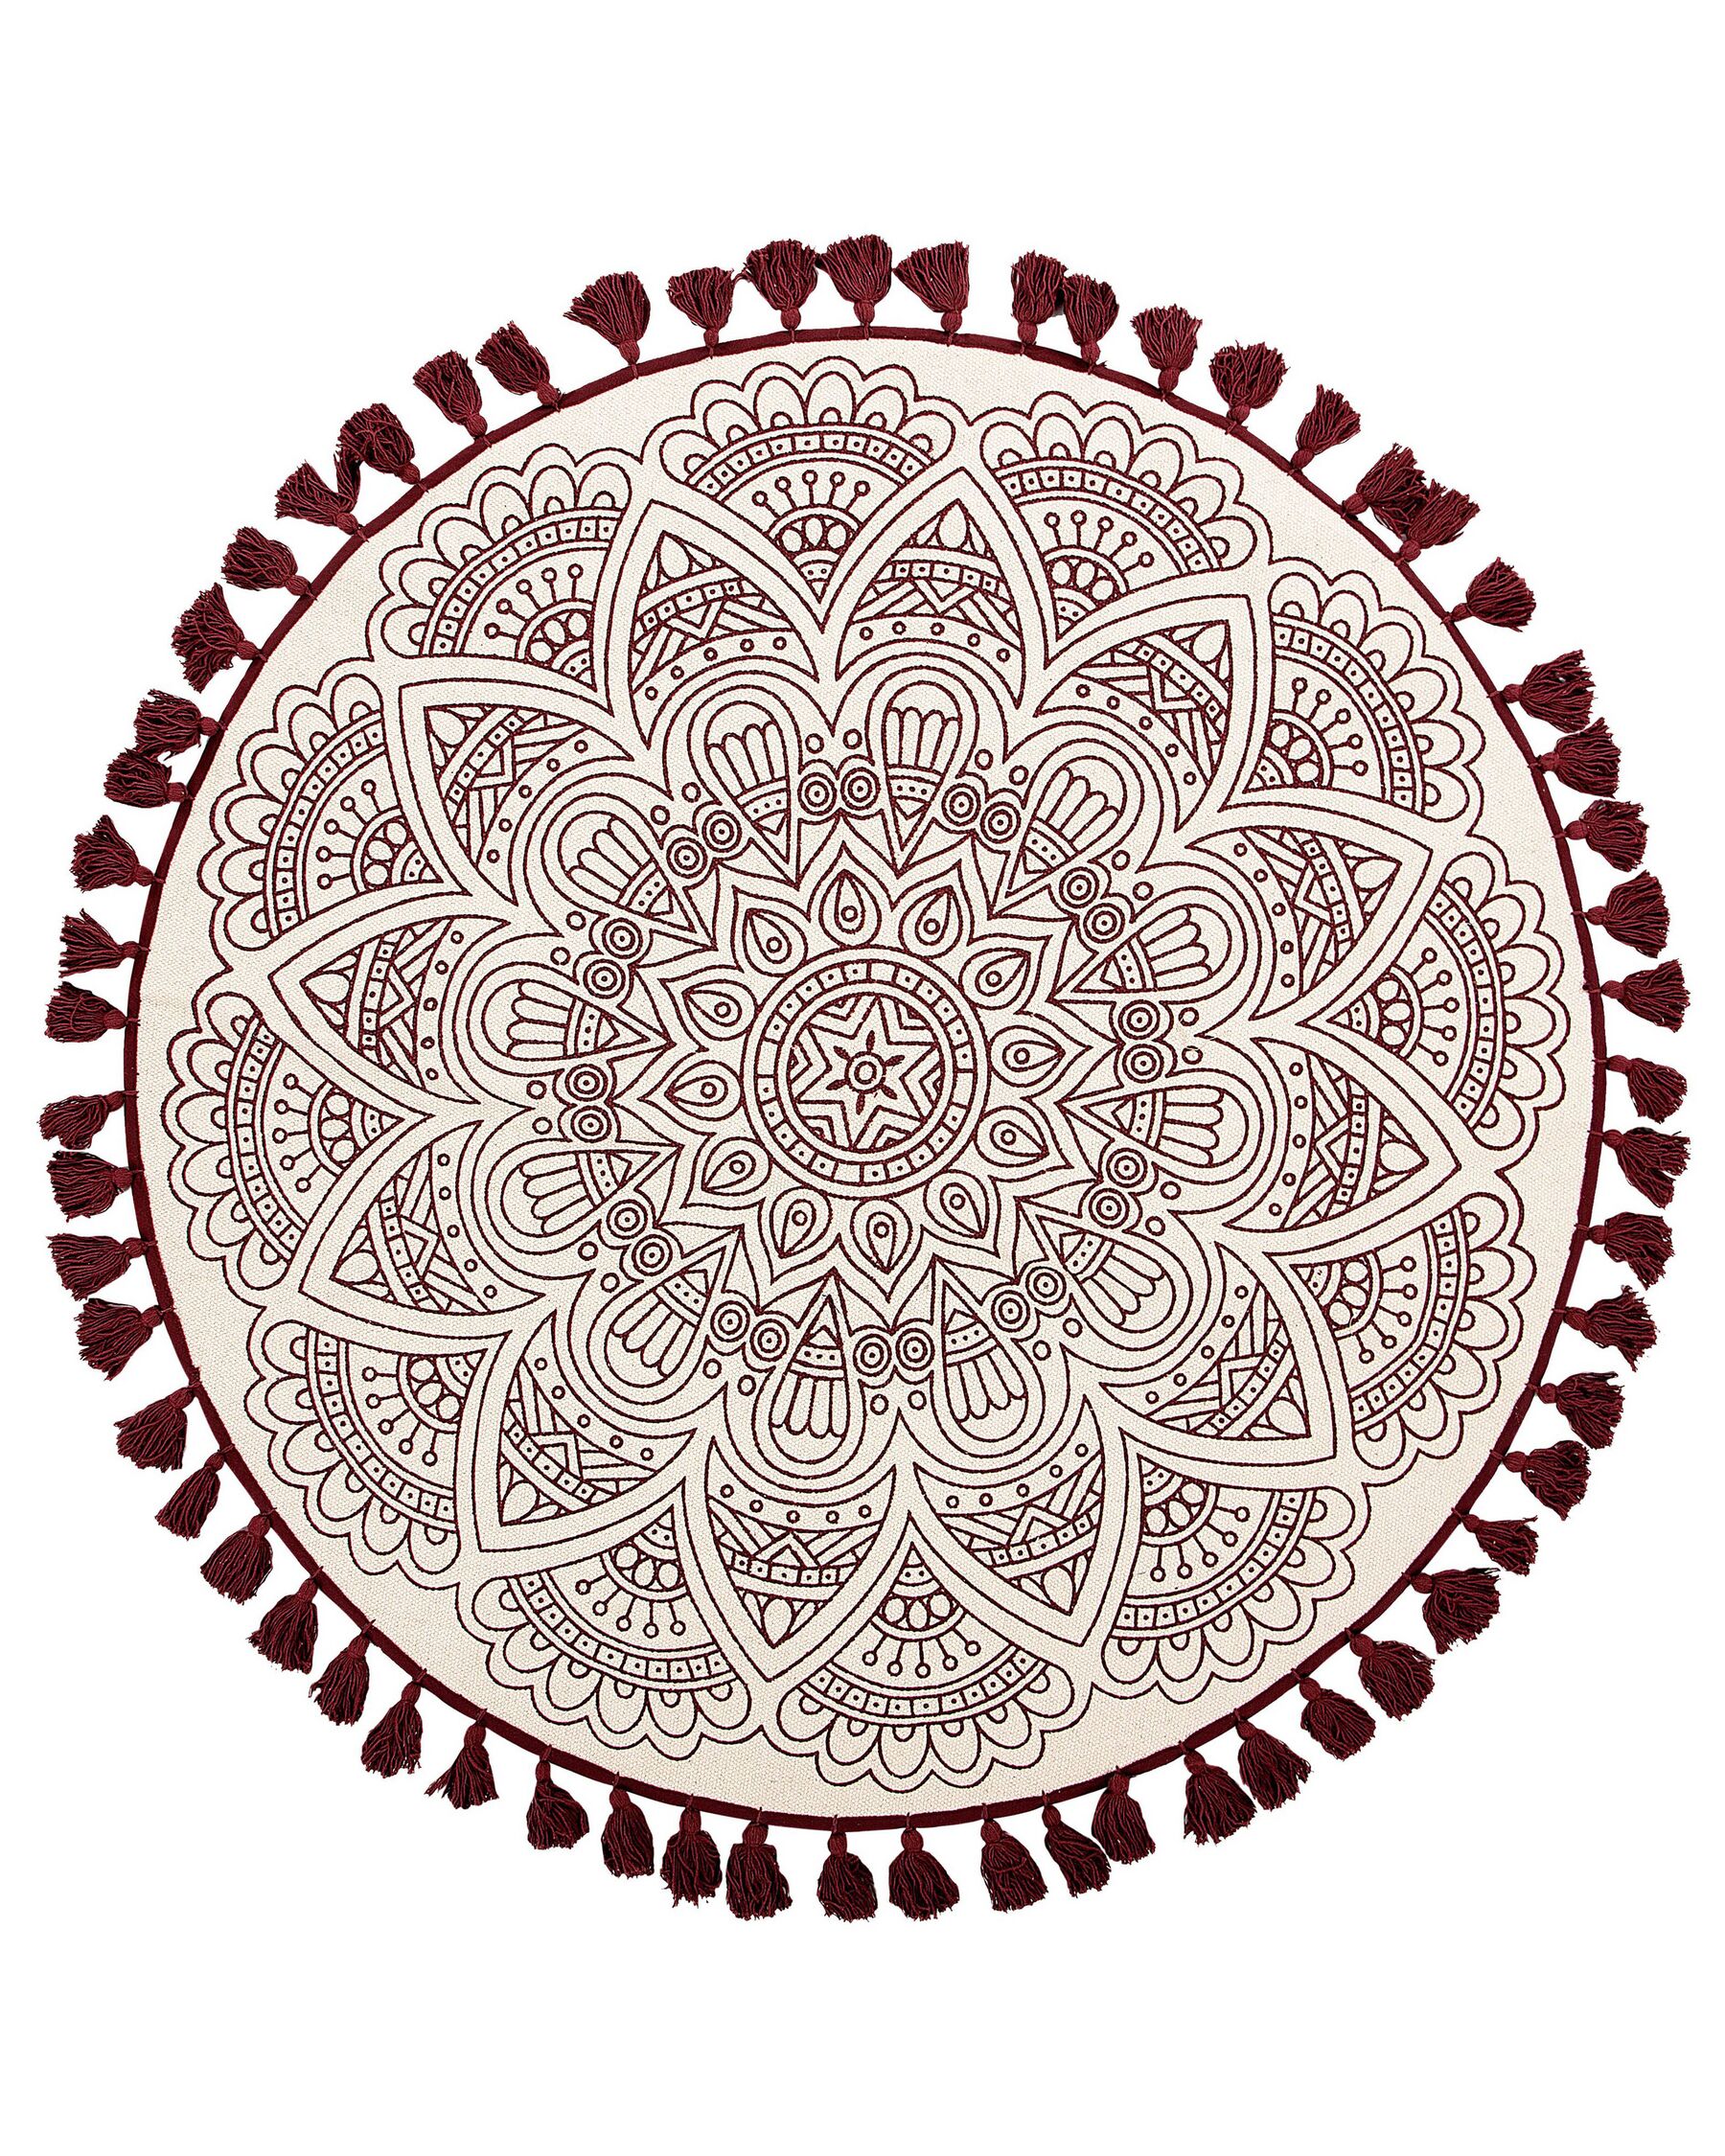 Teppich creme/rot ø 120 cm Mandala-Muster AYAKLI_756562